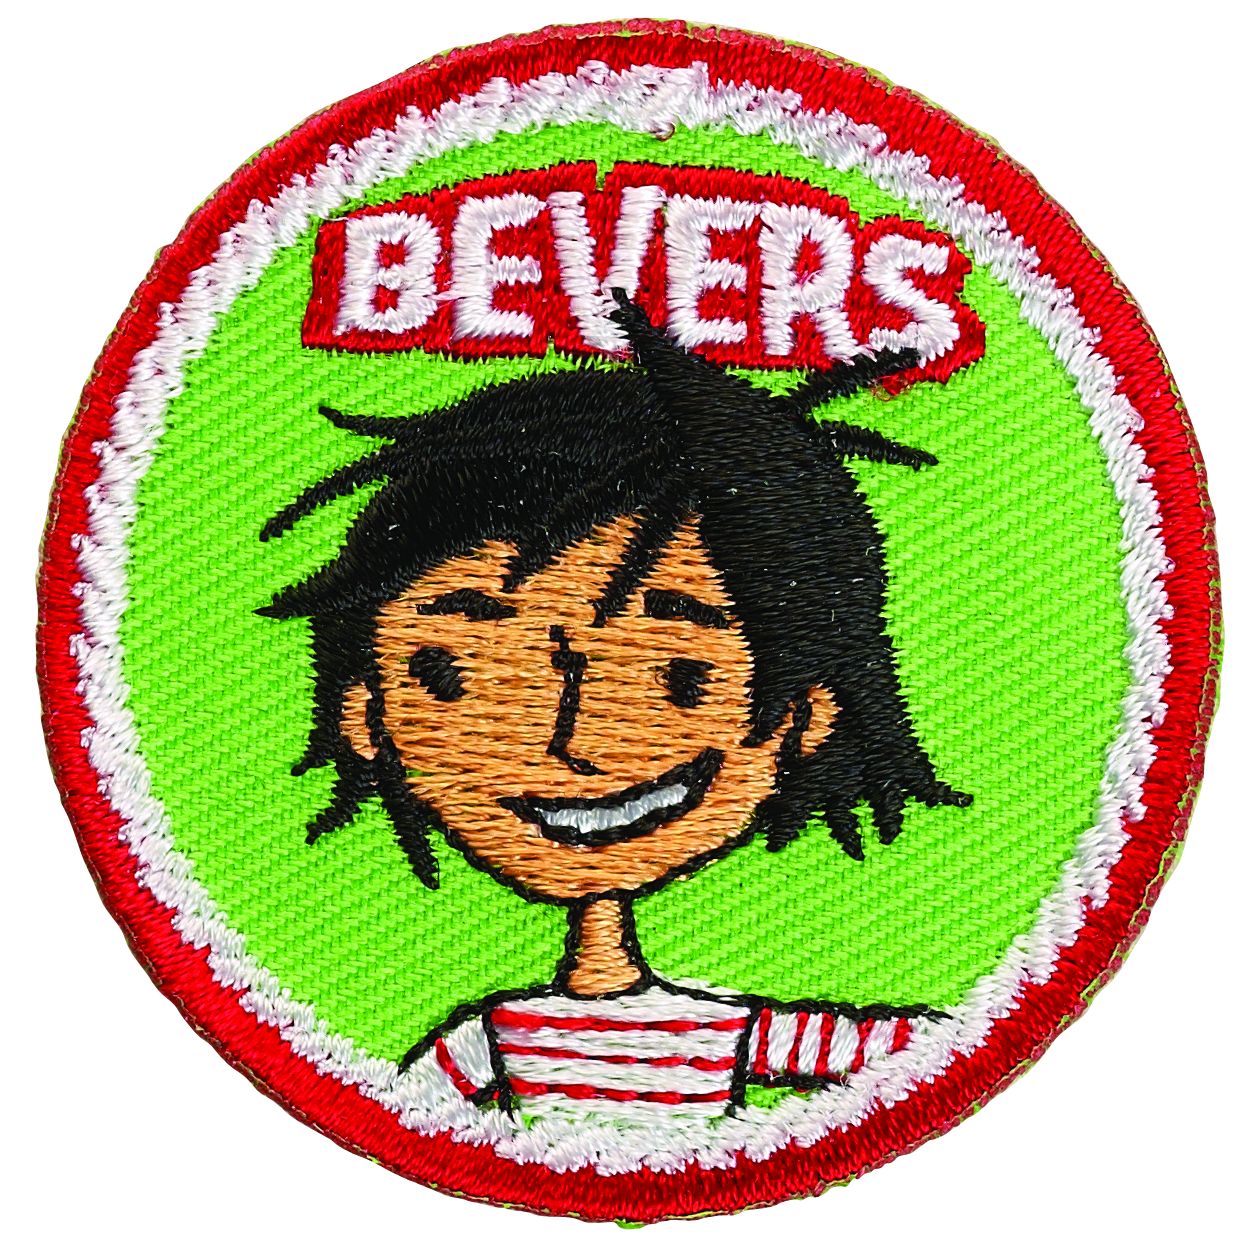 Bekentenis Dakloos Vertrouwen op Speltakteken Bevers | Bever badge of insigne kopen? | ScoutShop